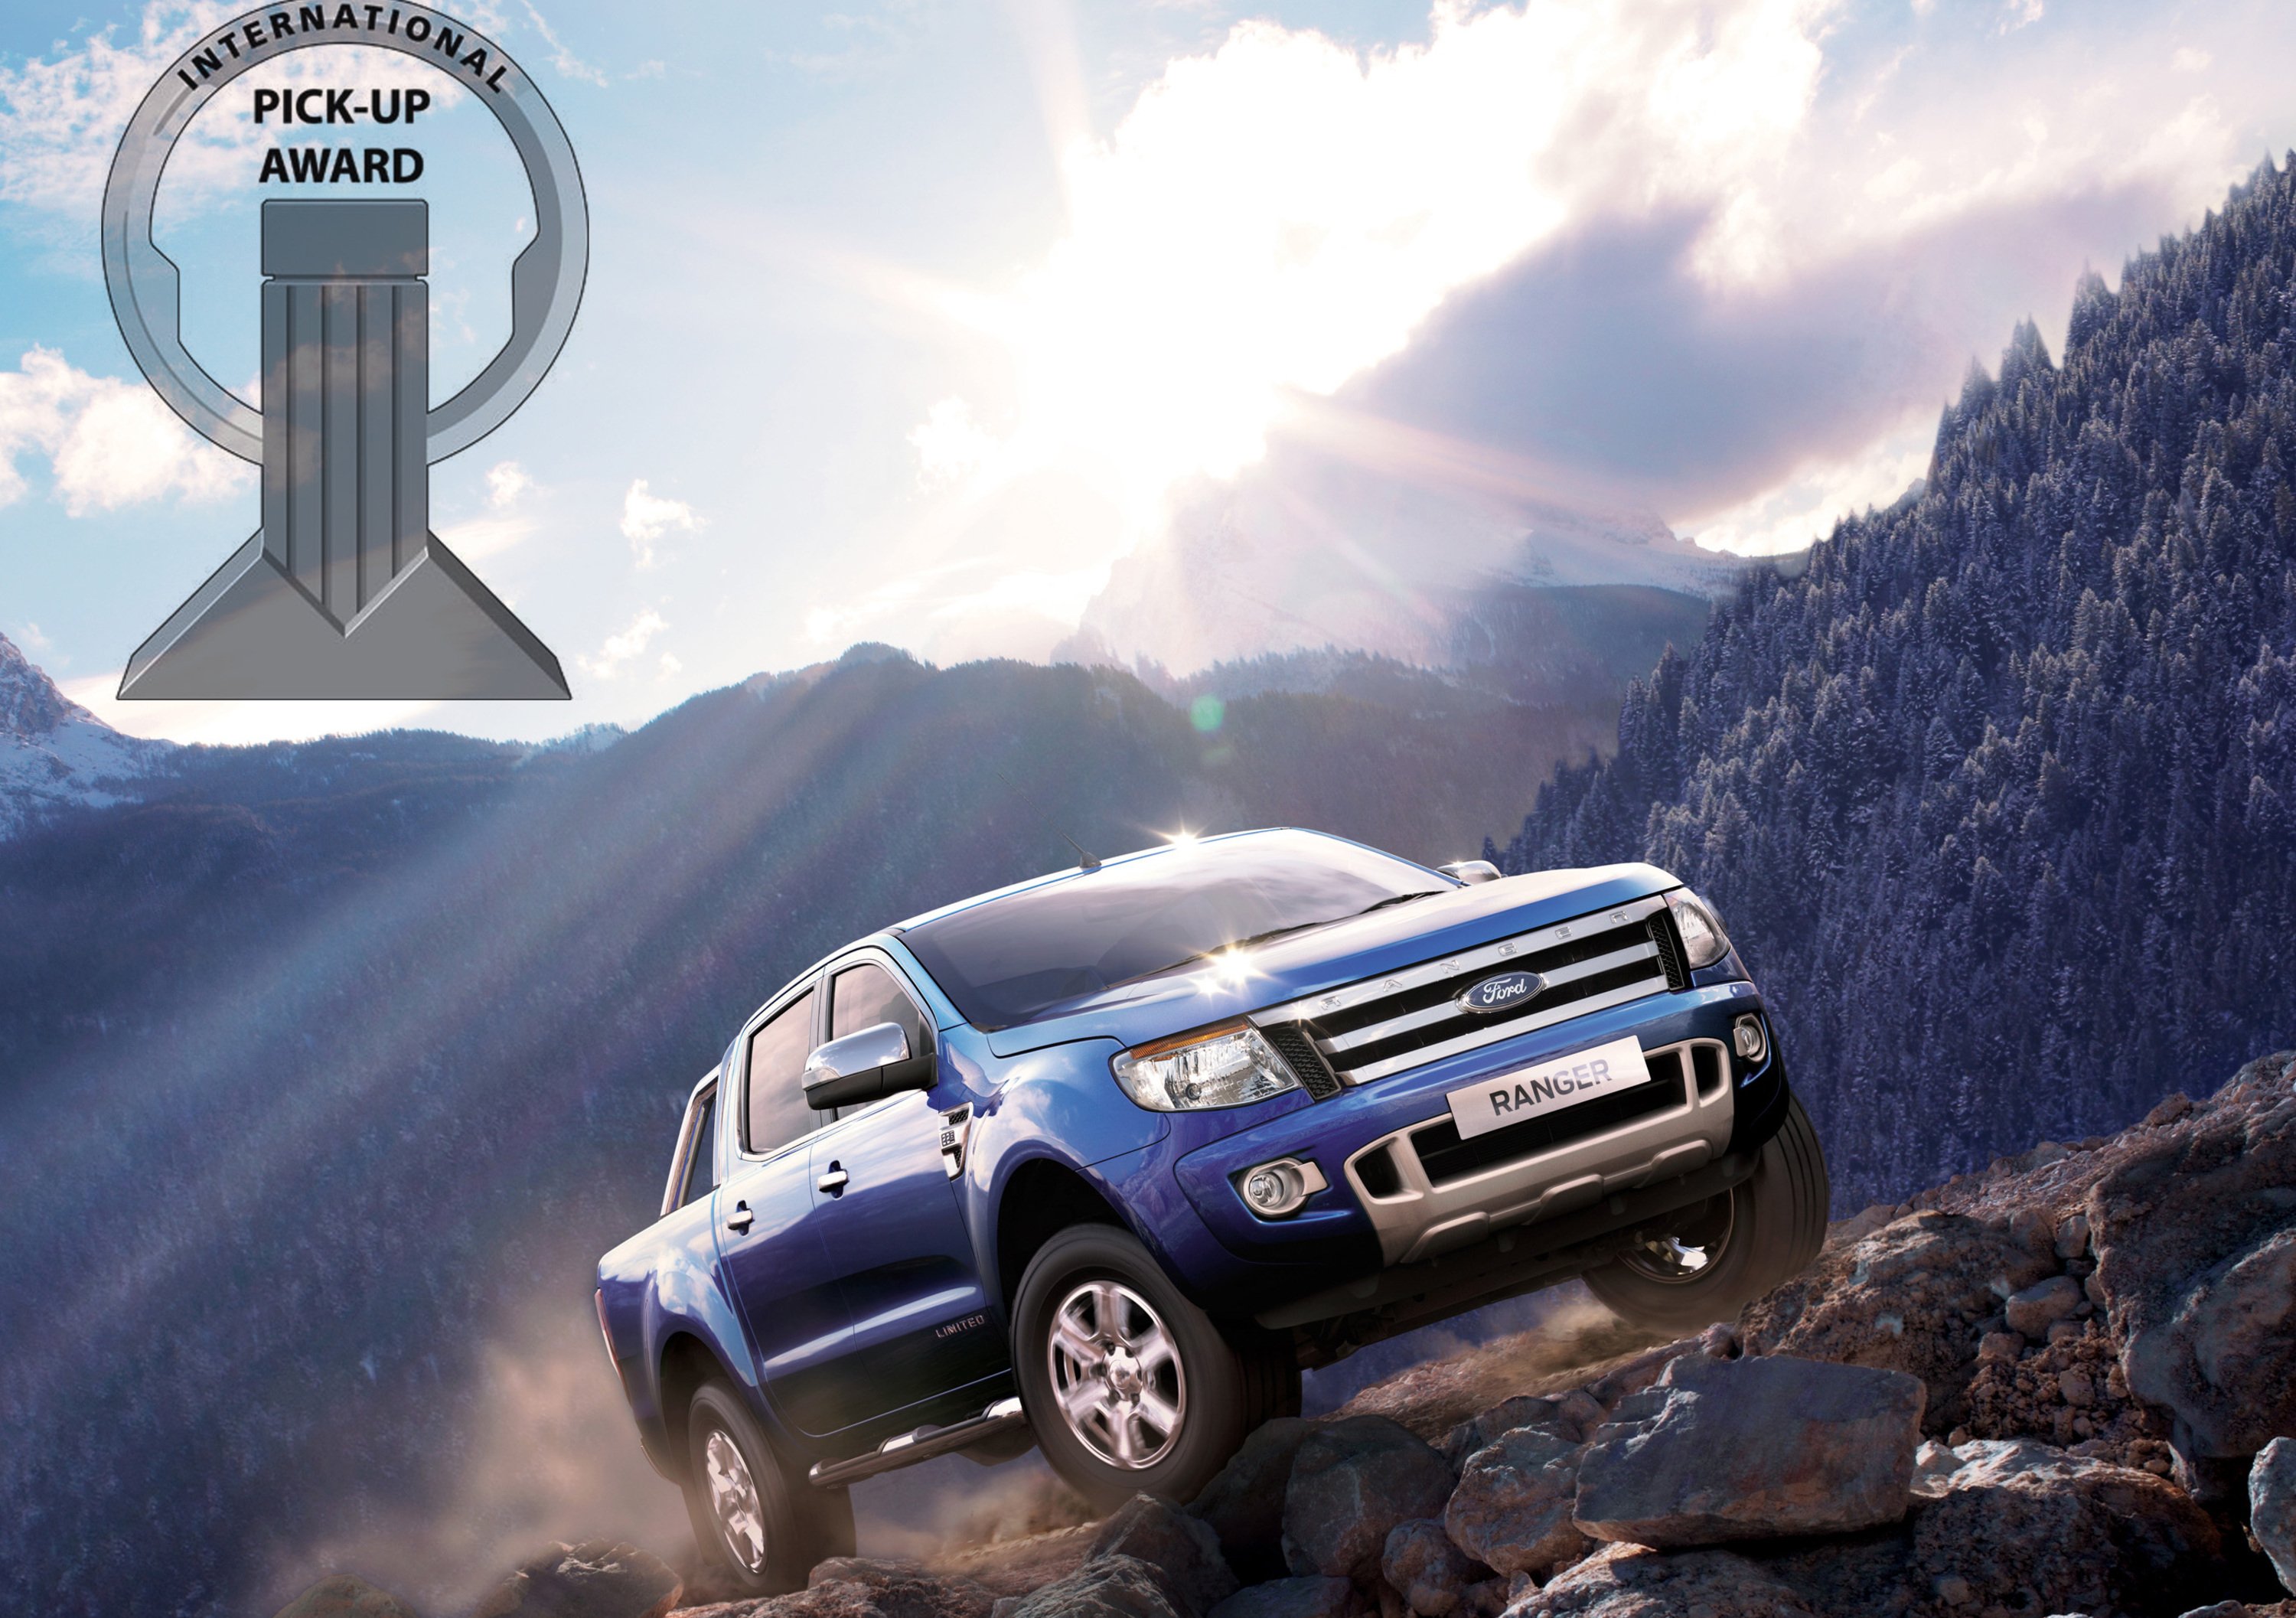 Il Ford Ranger premiato come &ldquo;International Pick-Up Award 2013&rdquo;